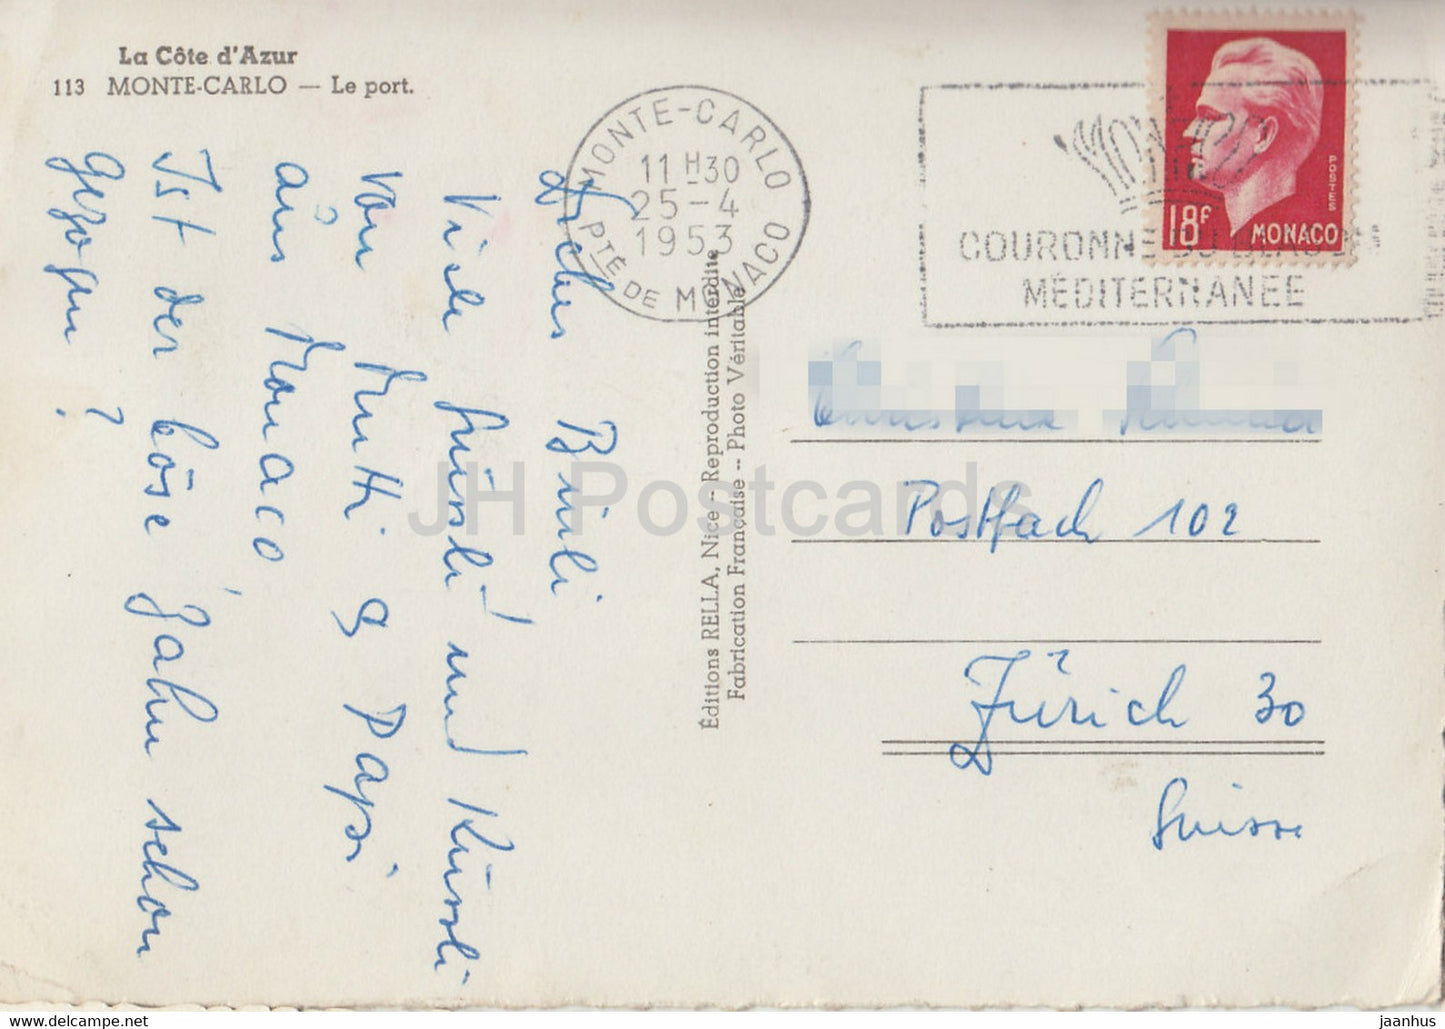 Monte Carlo - Le Port - 113 - alte Postkarte - 1953 - Monaco - gebraucht